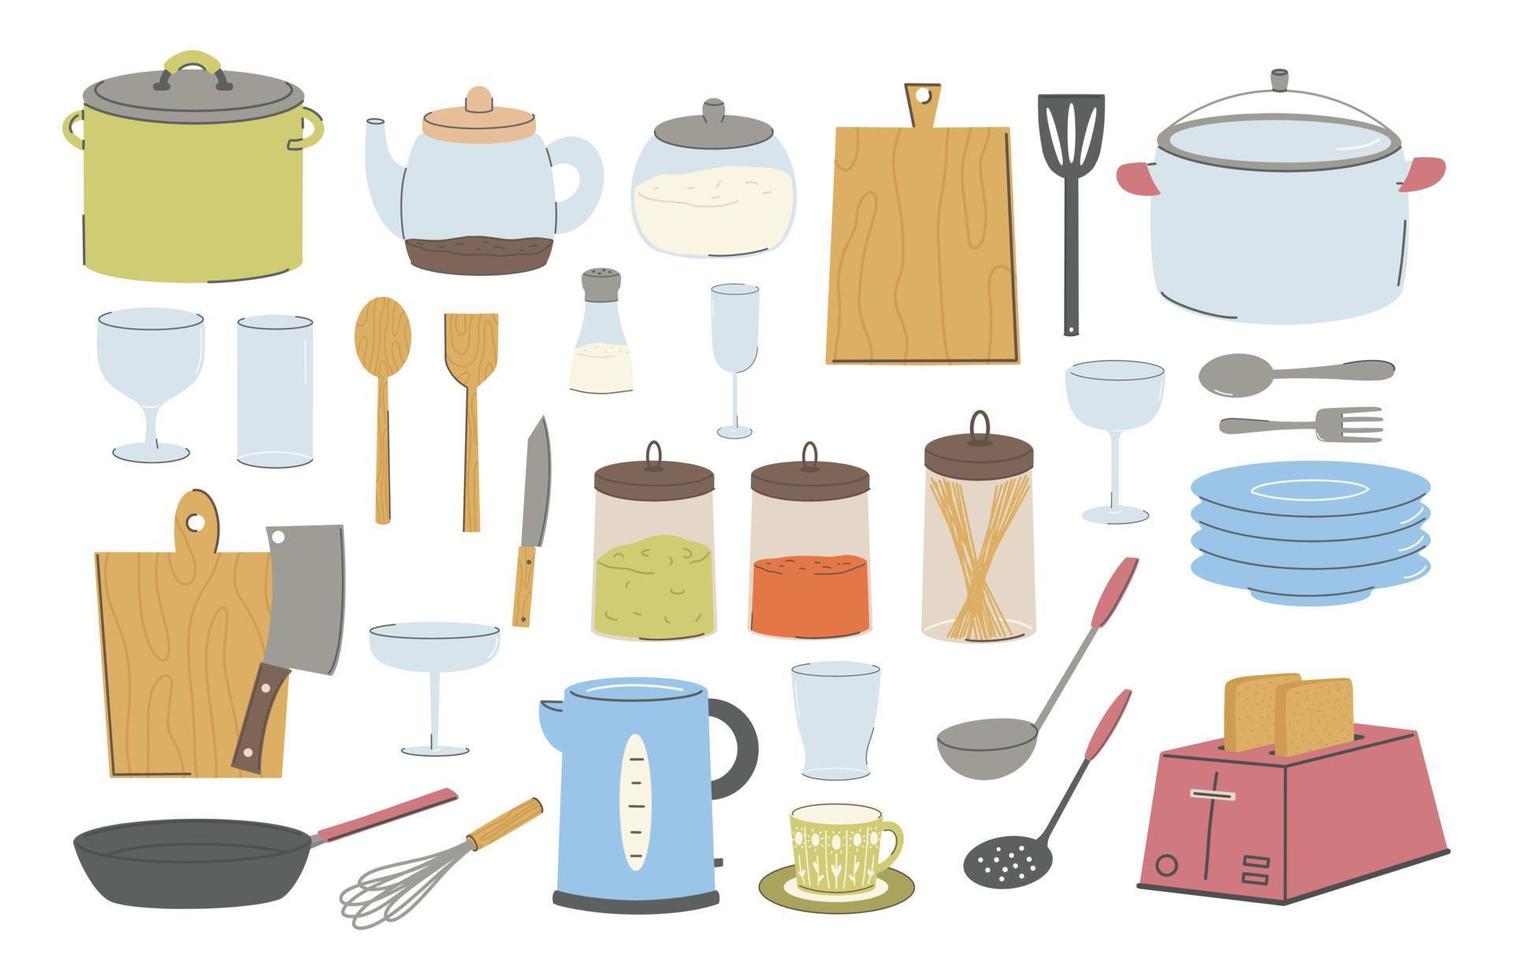 colección de electrodomésticos y accesorios de cocina. utensilios de cocina, herramientas, equipos y cubiertos para cocinar. ilustraciones vectoriales planas de objetos de utensilios de cocina aislados en fondo blanco. vector